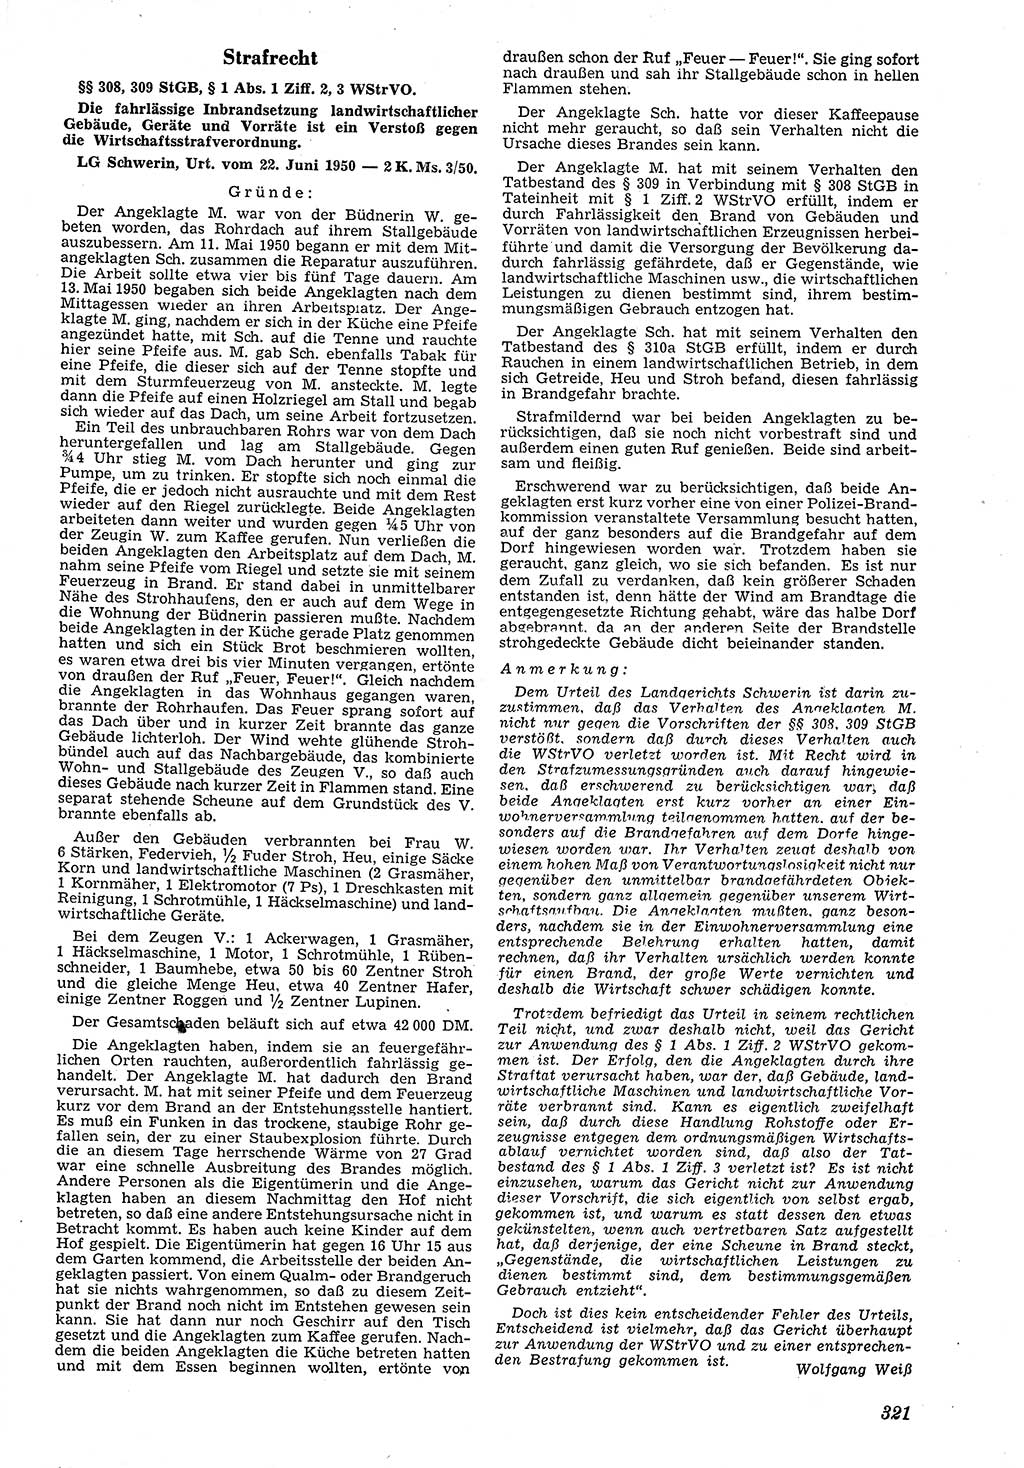 Neue Justiz (NJ), Zeitschrift für Recht und Rechtswissenschaft [Deutsche Demokratische Republik (DDR)], 4. Jahrgang 1950, Seite 321 (NJ DDR 1950, S. 321)